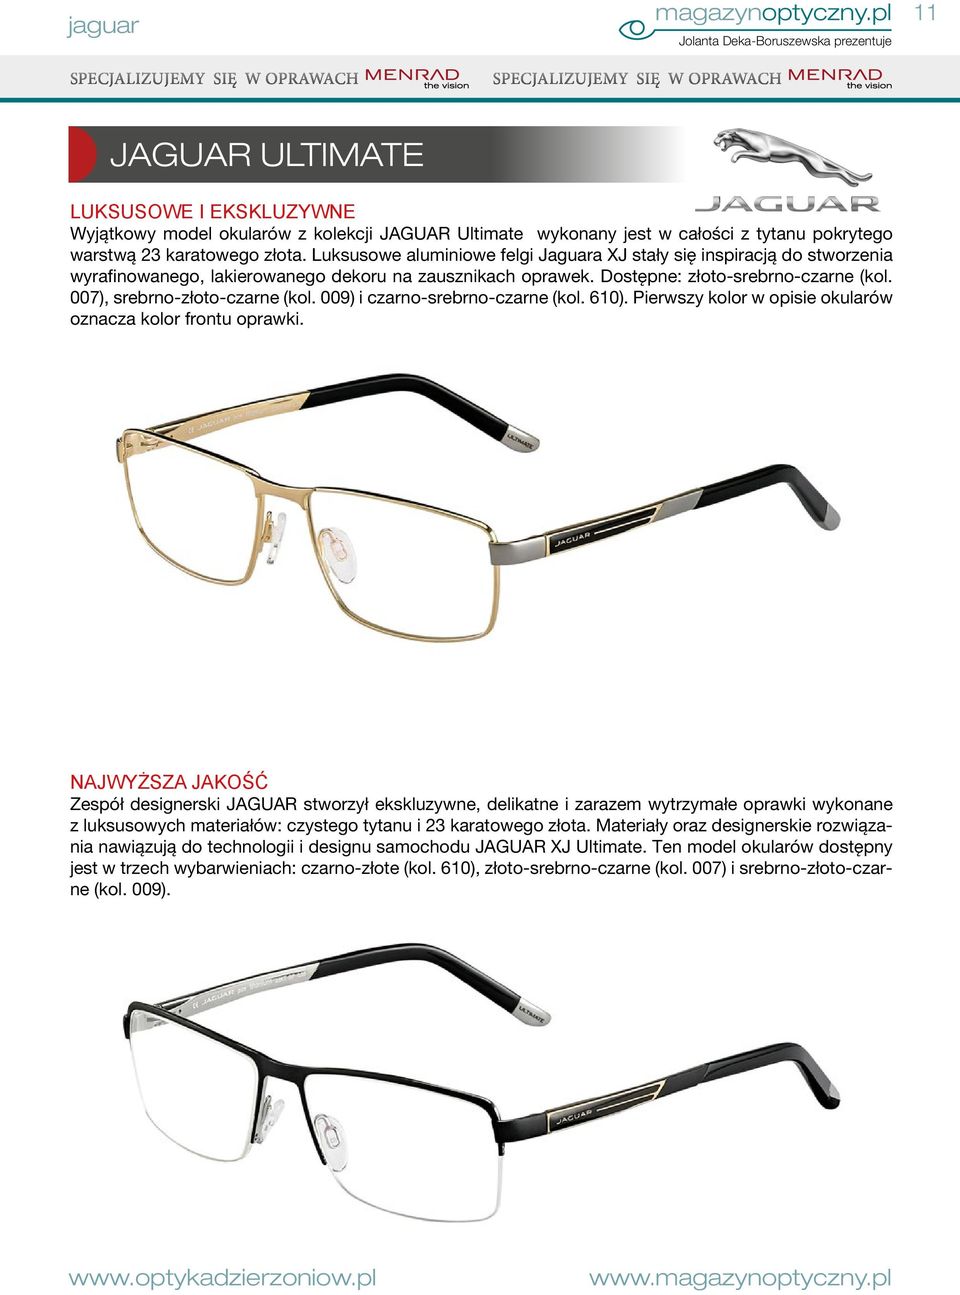 007), srebrno-złoto-czarne (kol. 009) i czarno-srebrno-czarne (kol. 610). Pierwszy kolor w opisie okularów oznacza kolor frontu oprawki.